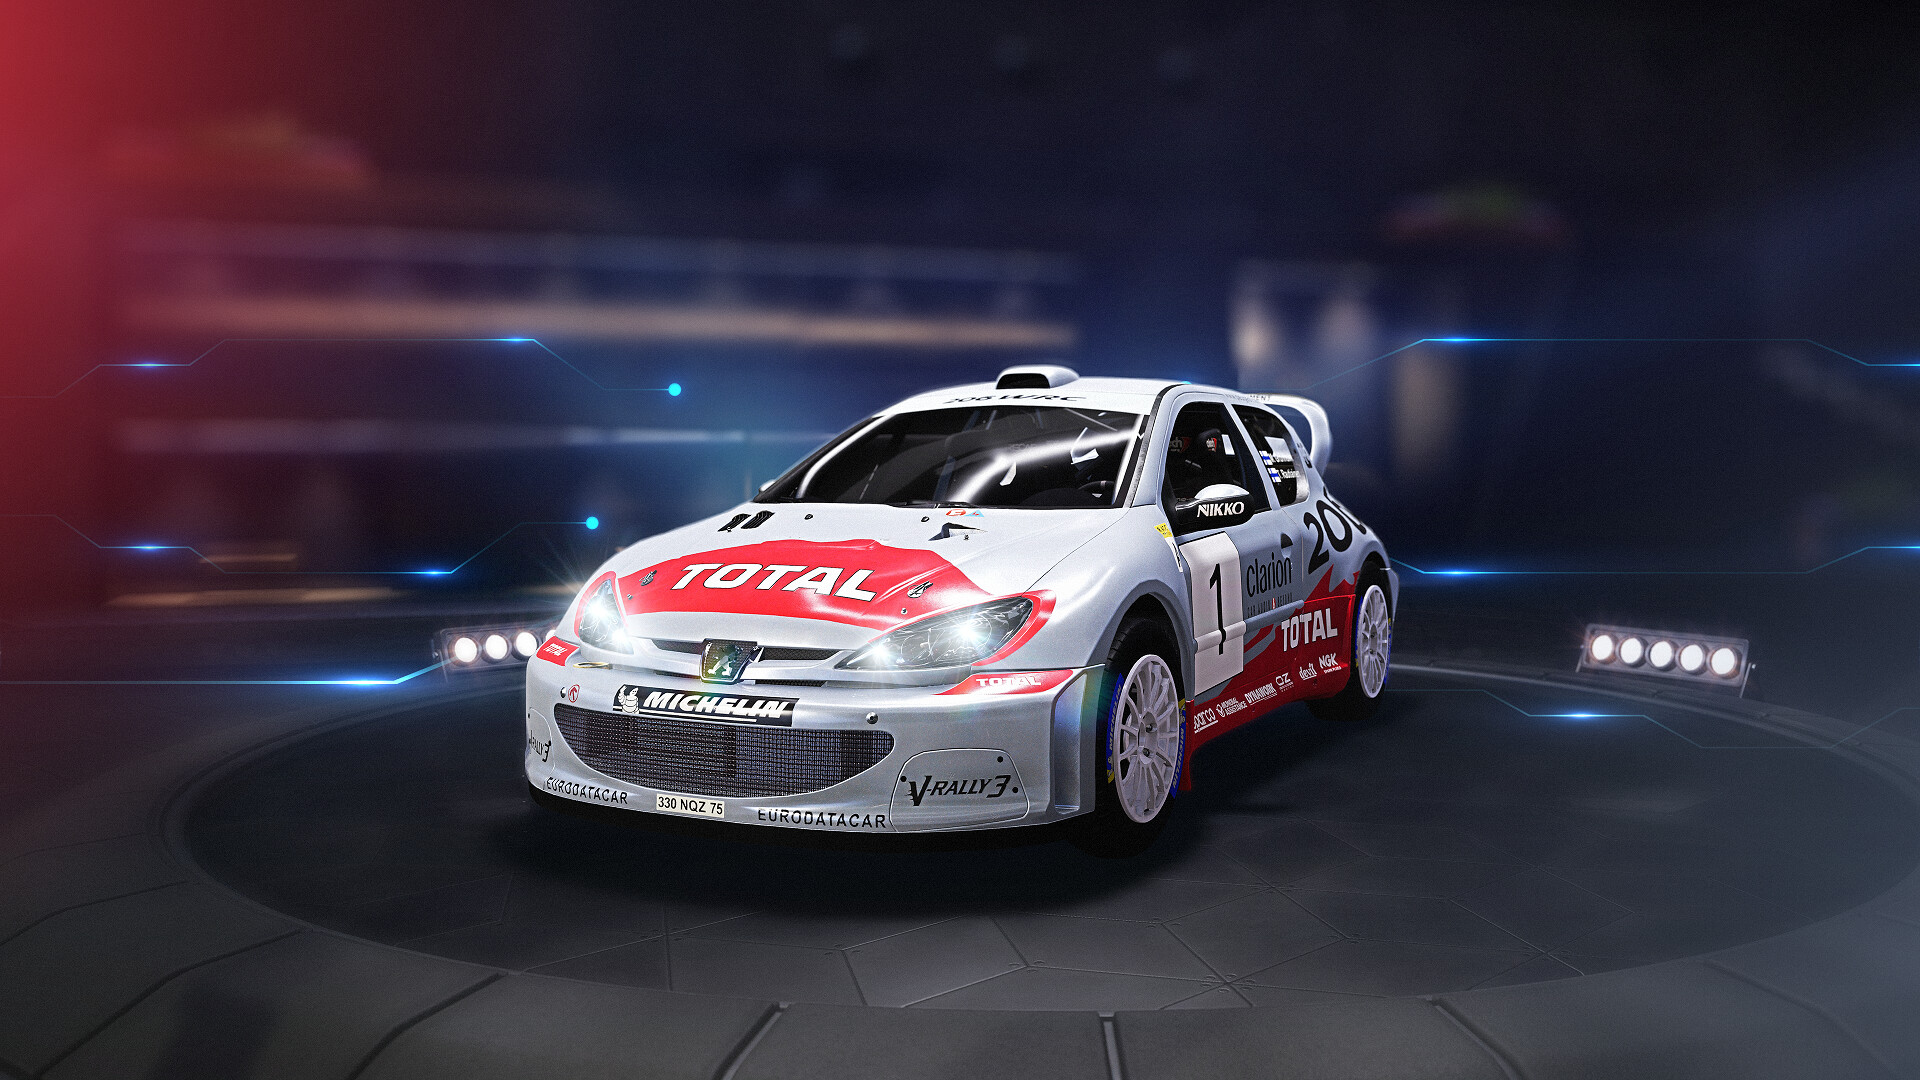 WRC Generations - Peugeot 206 WRC 2002 DLC Steam CD Key 1.51$